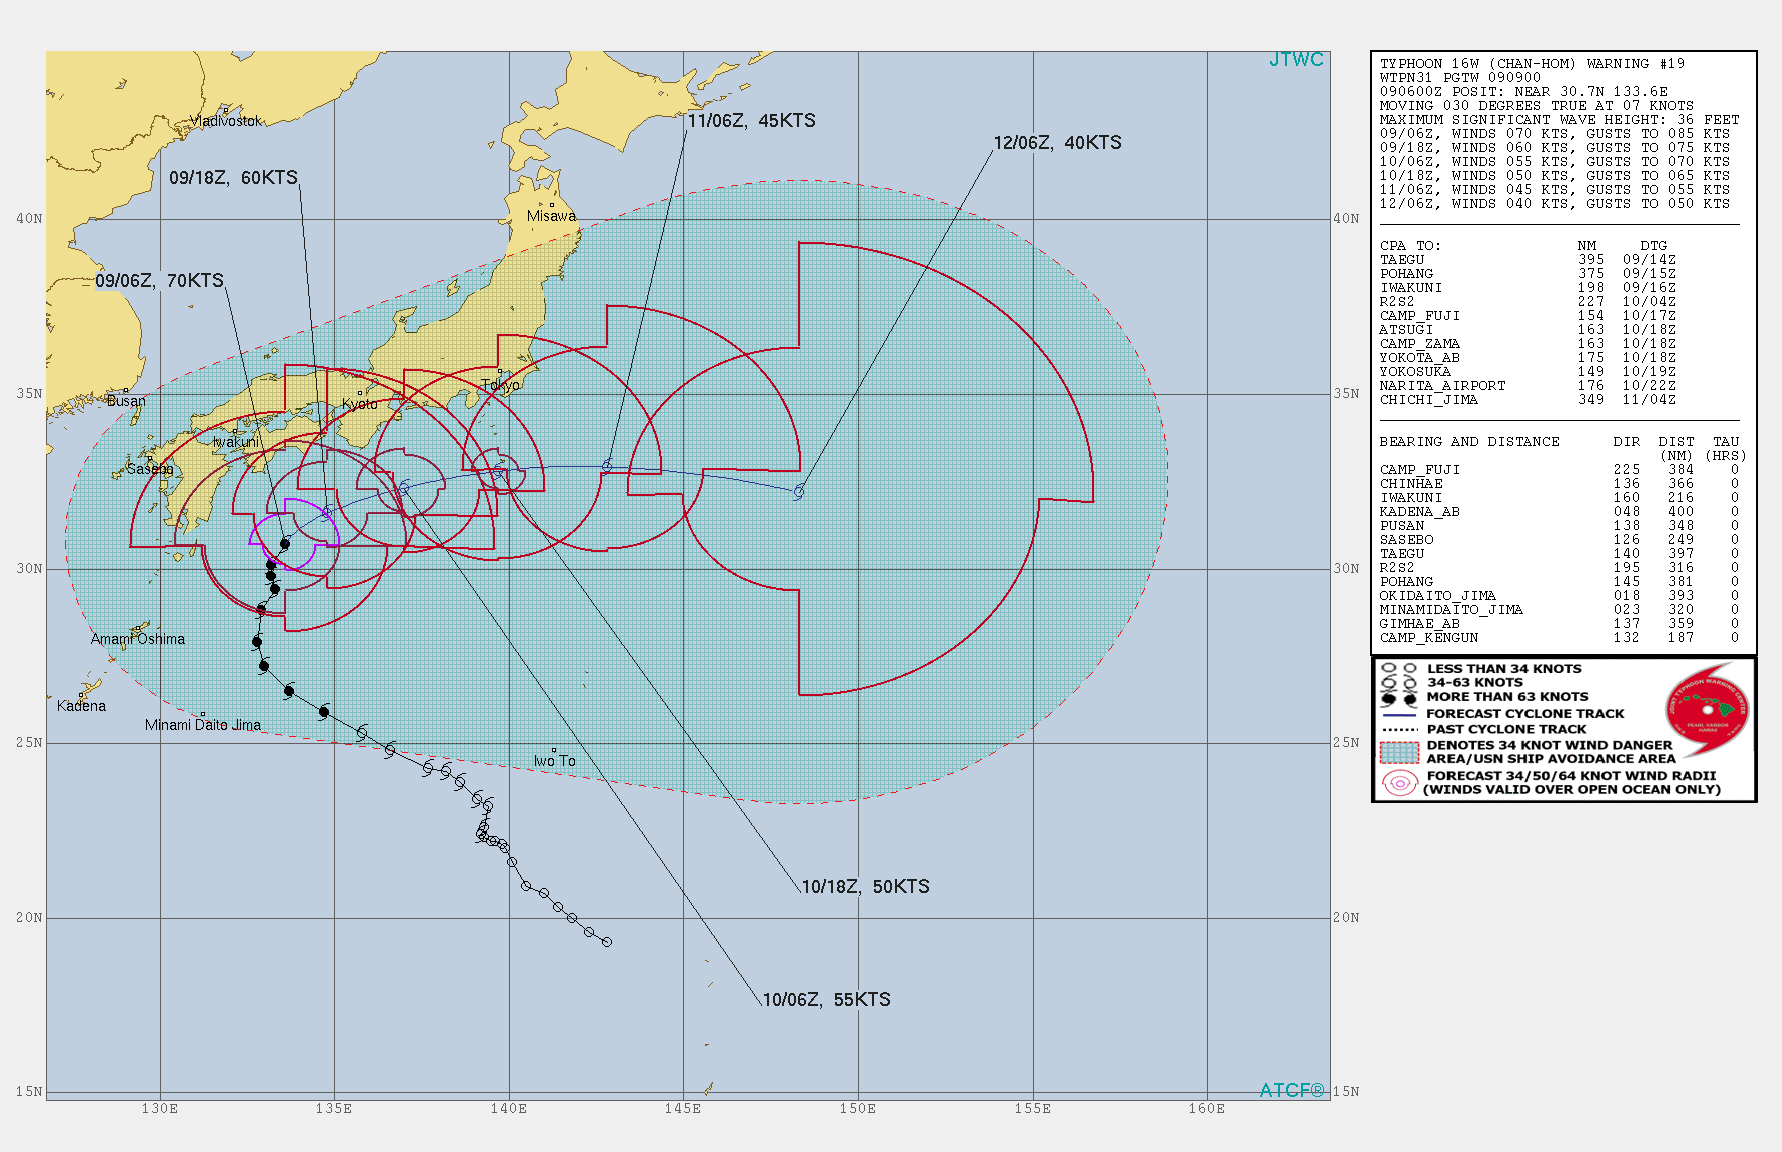 JTWC Tropical Storm forecast